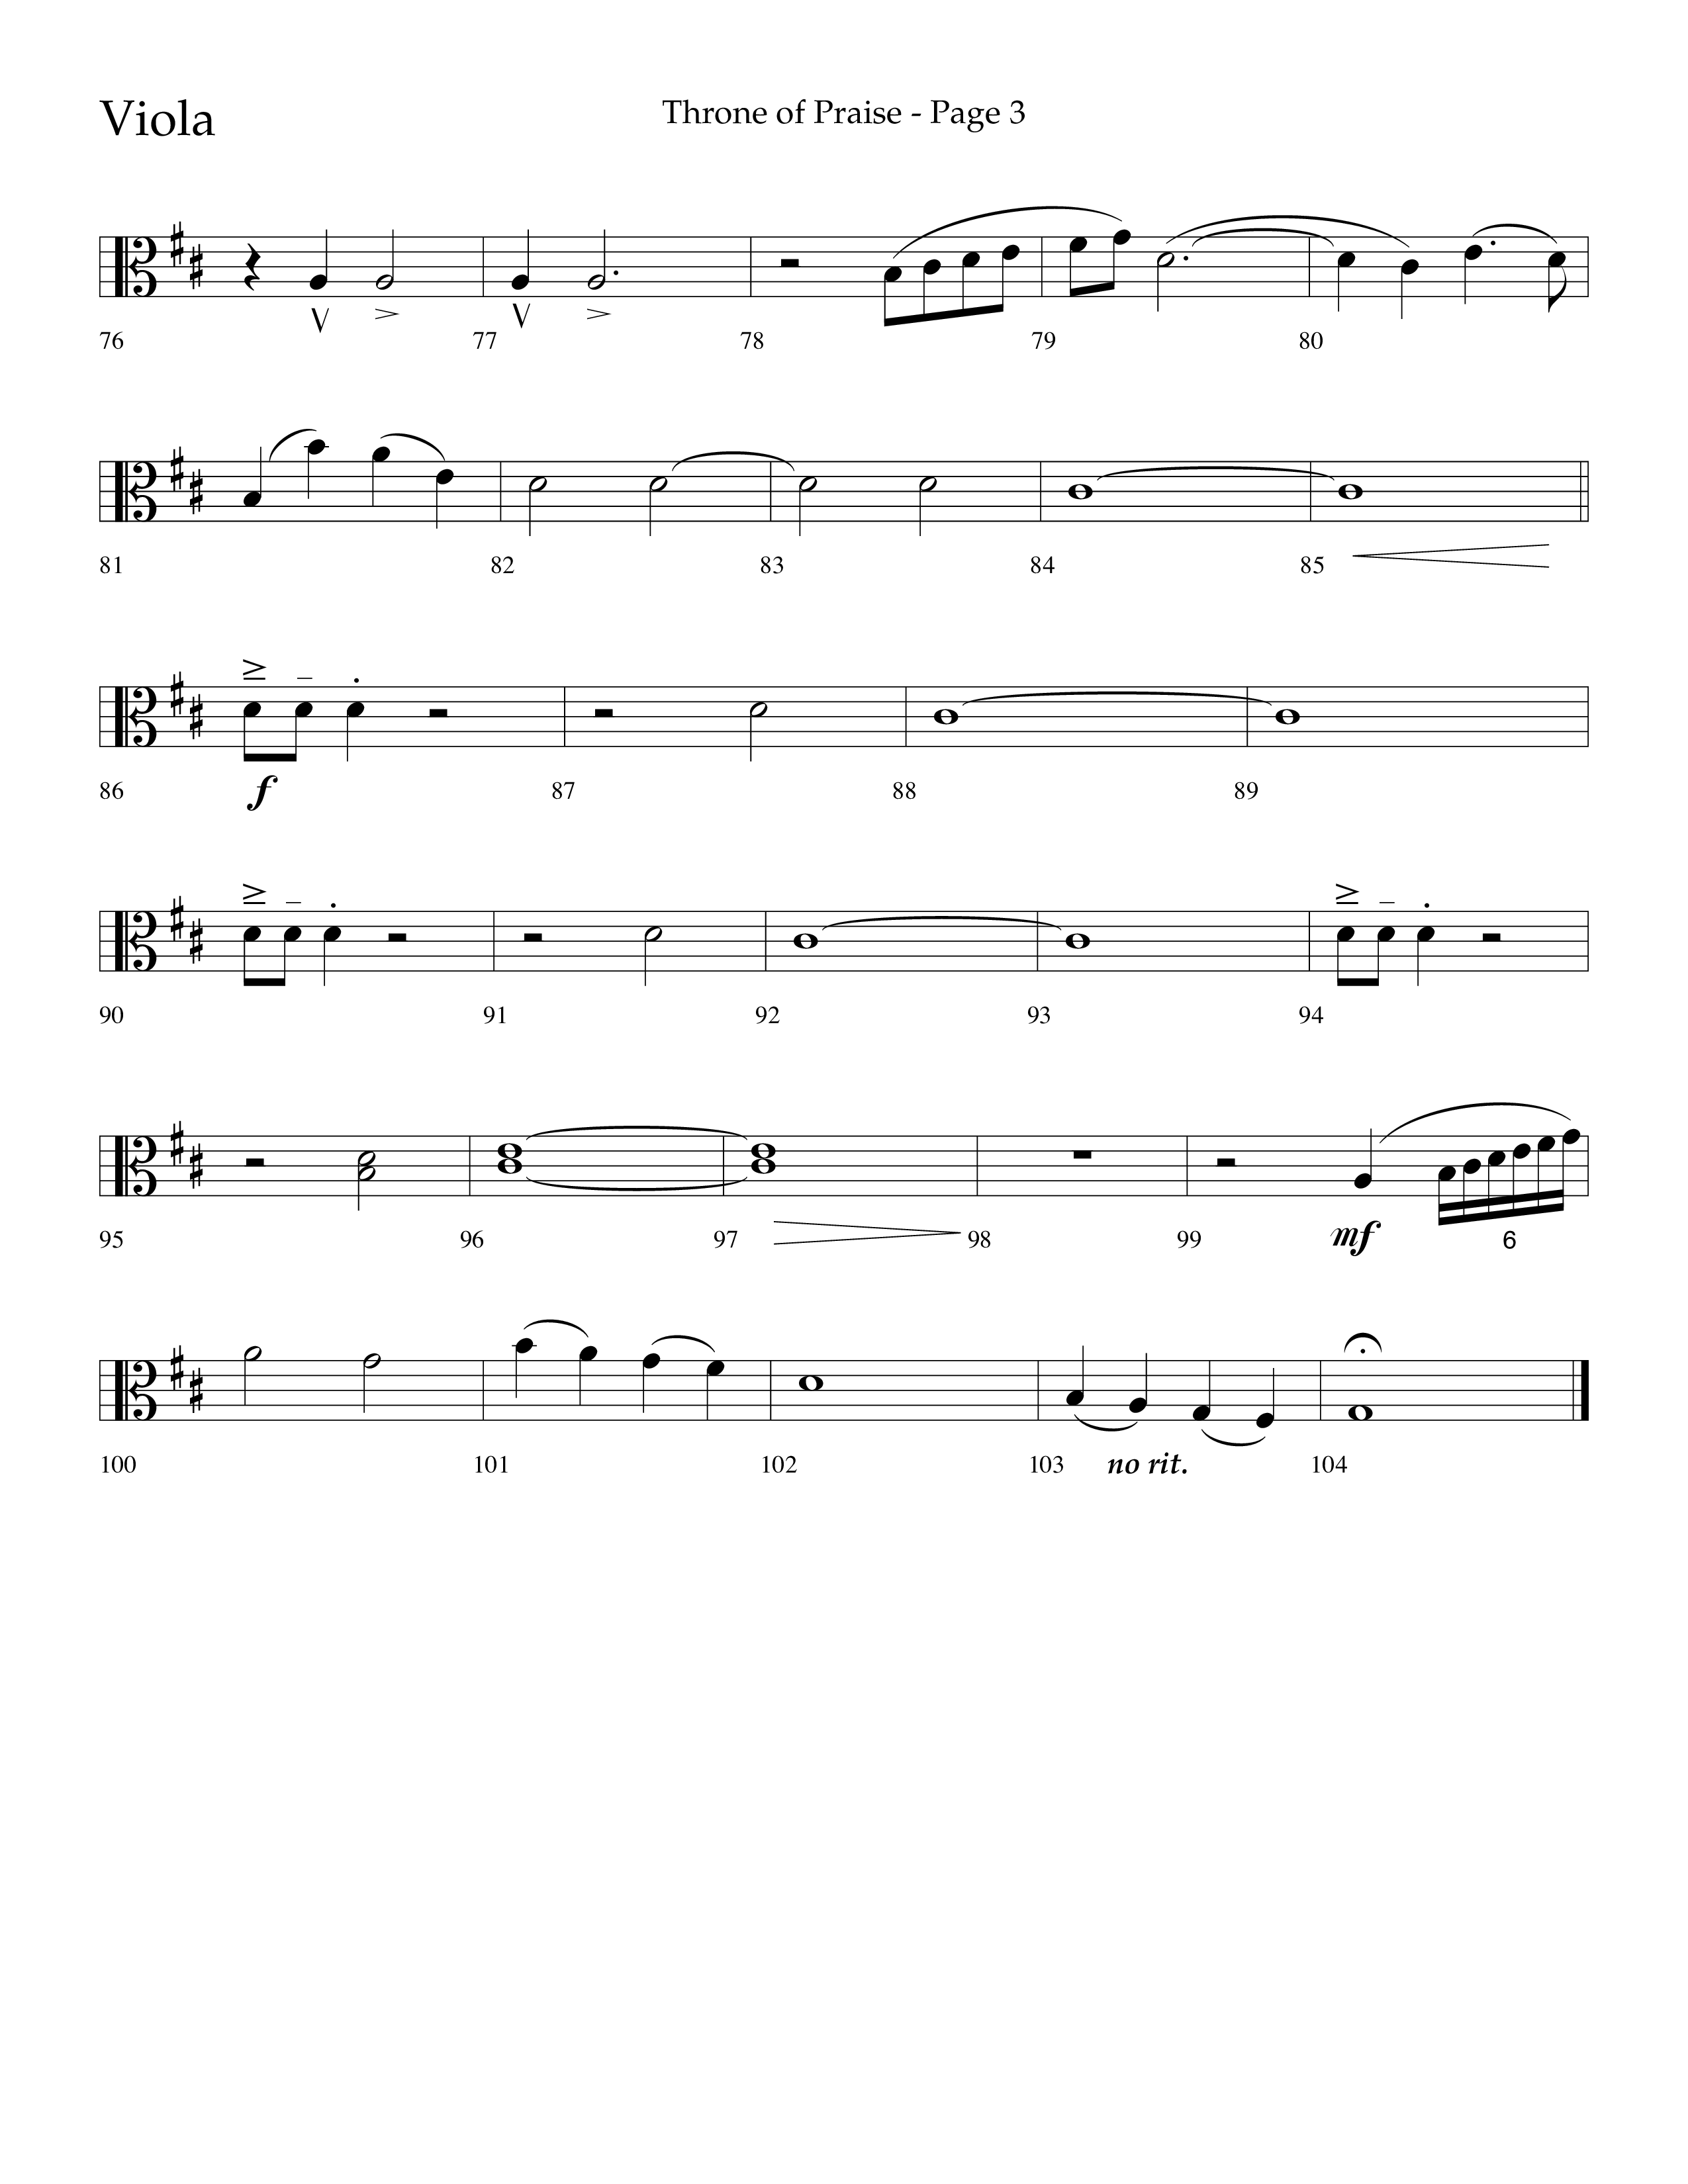 Throne Of Praise (Choral Anthem SATB) Viola (Lifeway Choral / Arr. J. Daniel Smith)